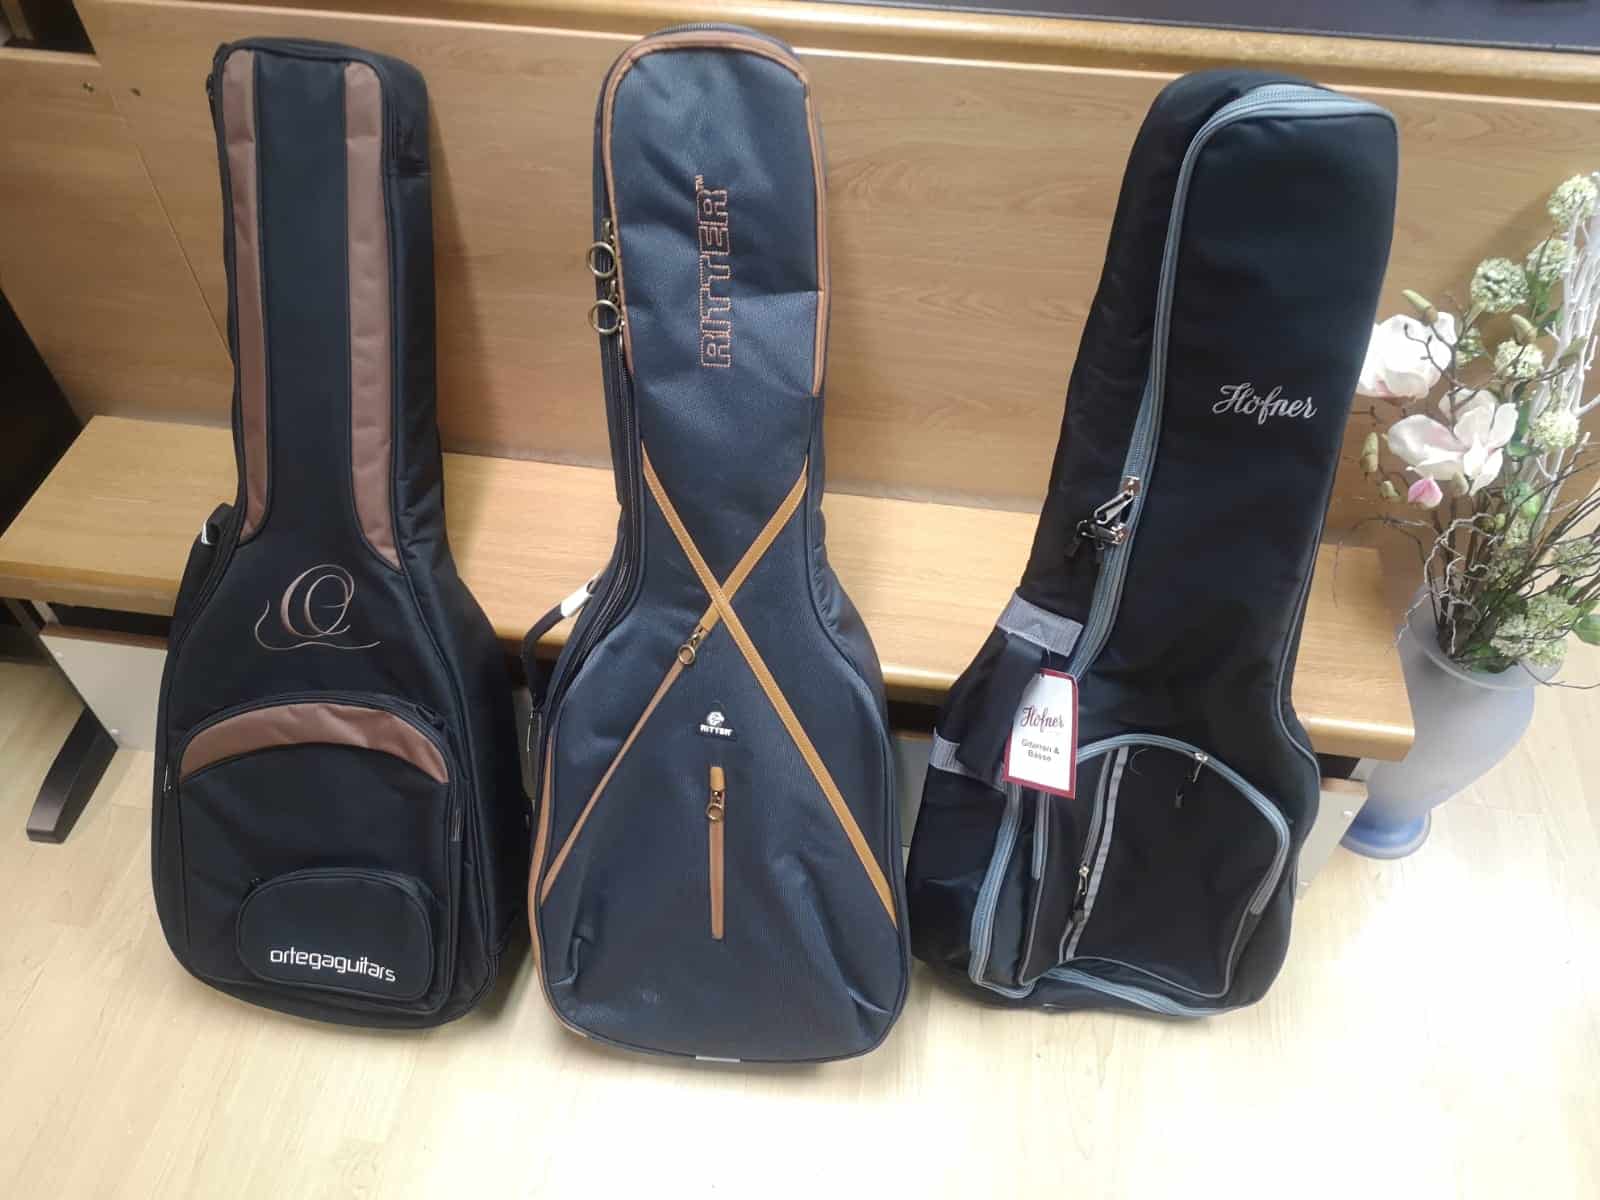 Koffer und Taschen für Gitarren, Ukulelen, Violinen, Celli und Kontrabass